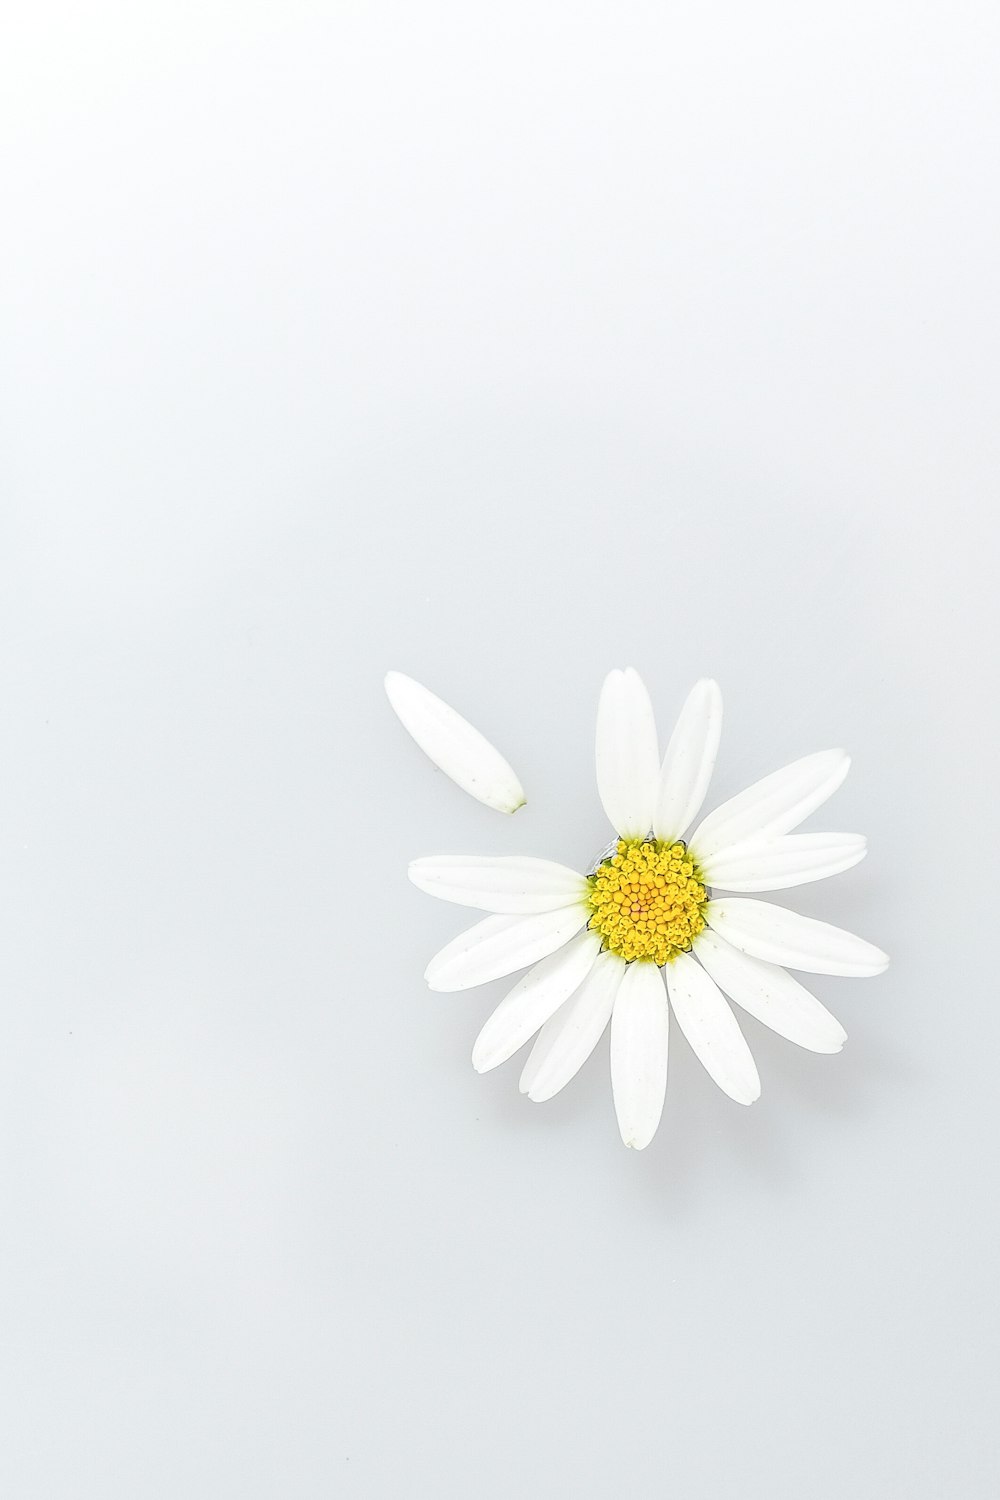 margarita blanca en flor foto de primer plano